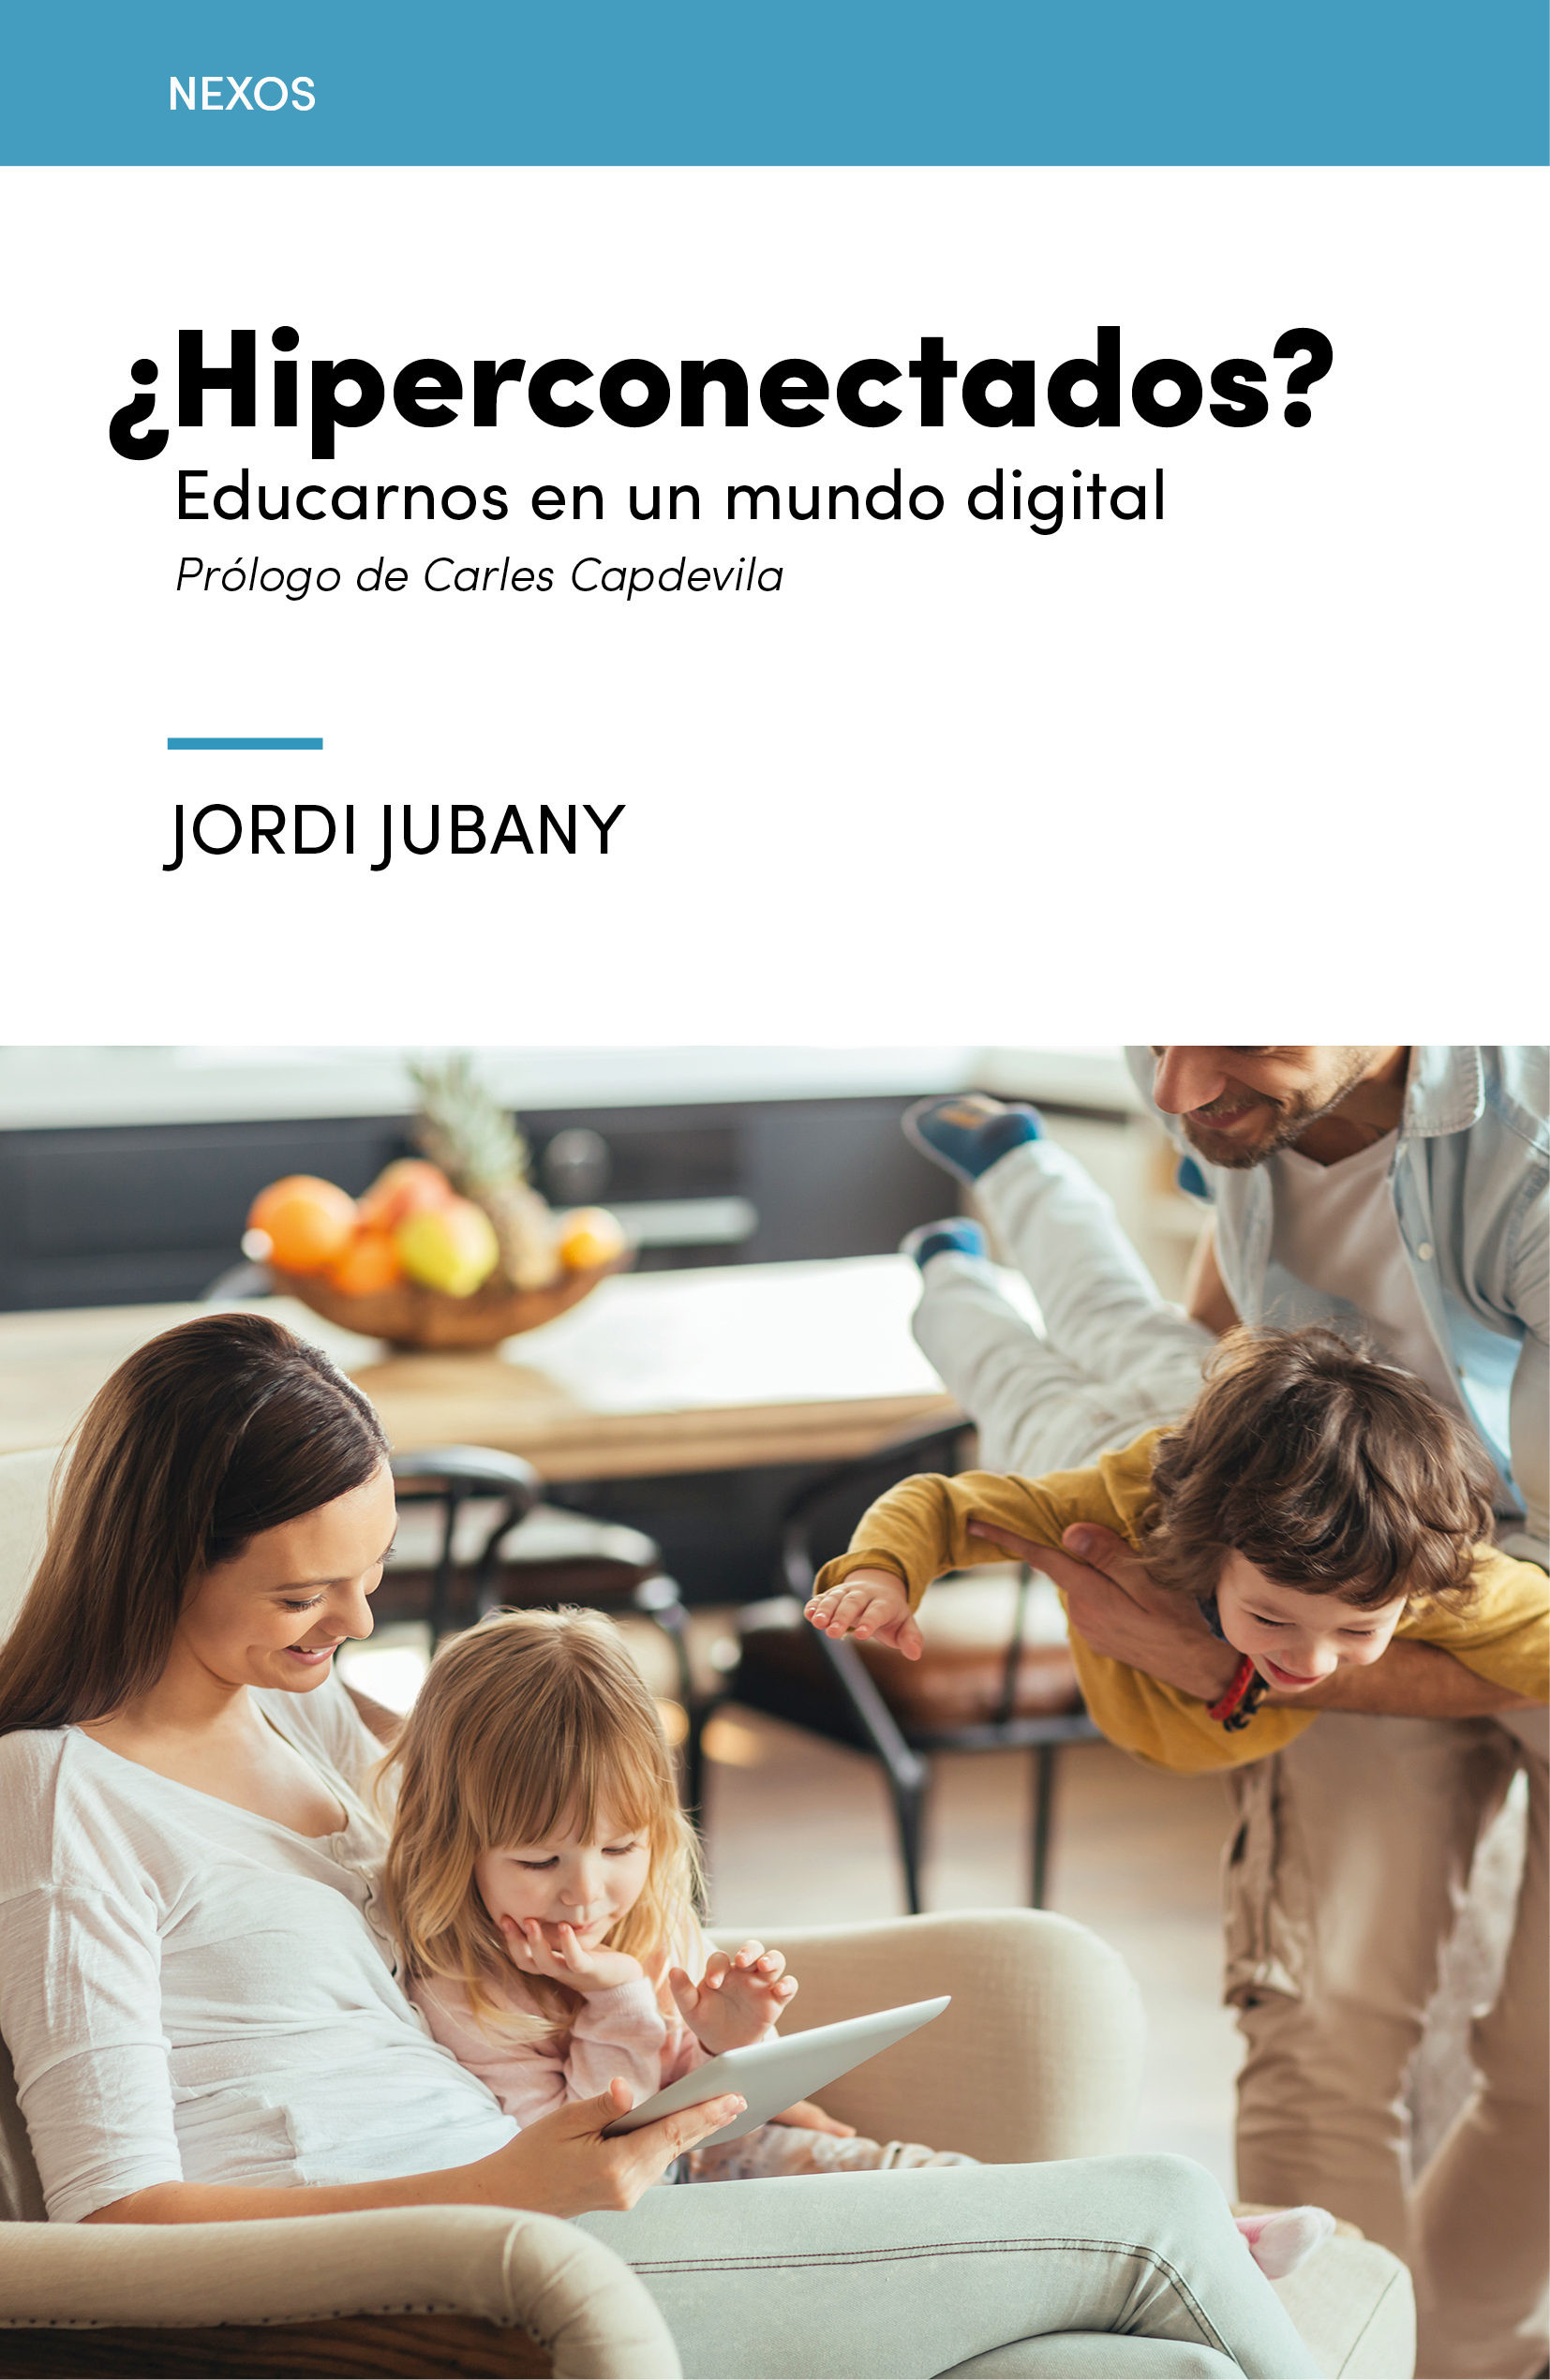 Imagen ¿Hiperconectados?, educarnos en un mundo digital/ Jordi Jubany